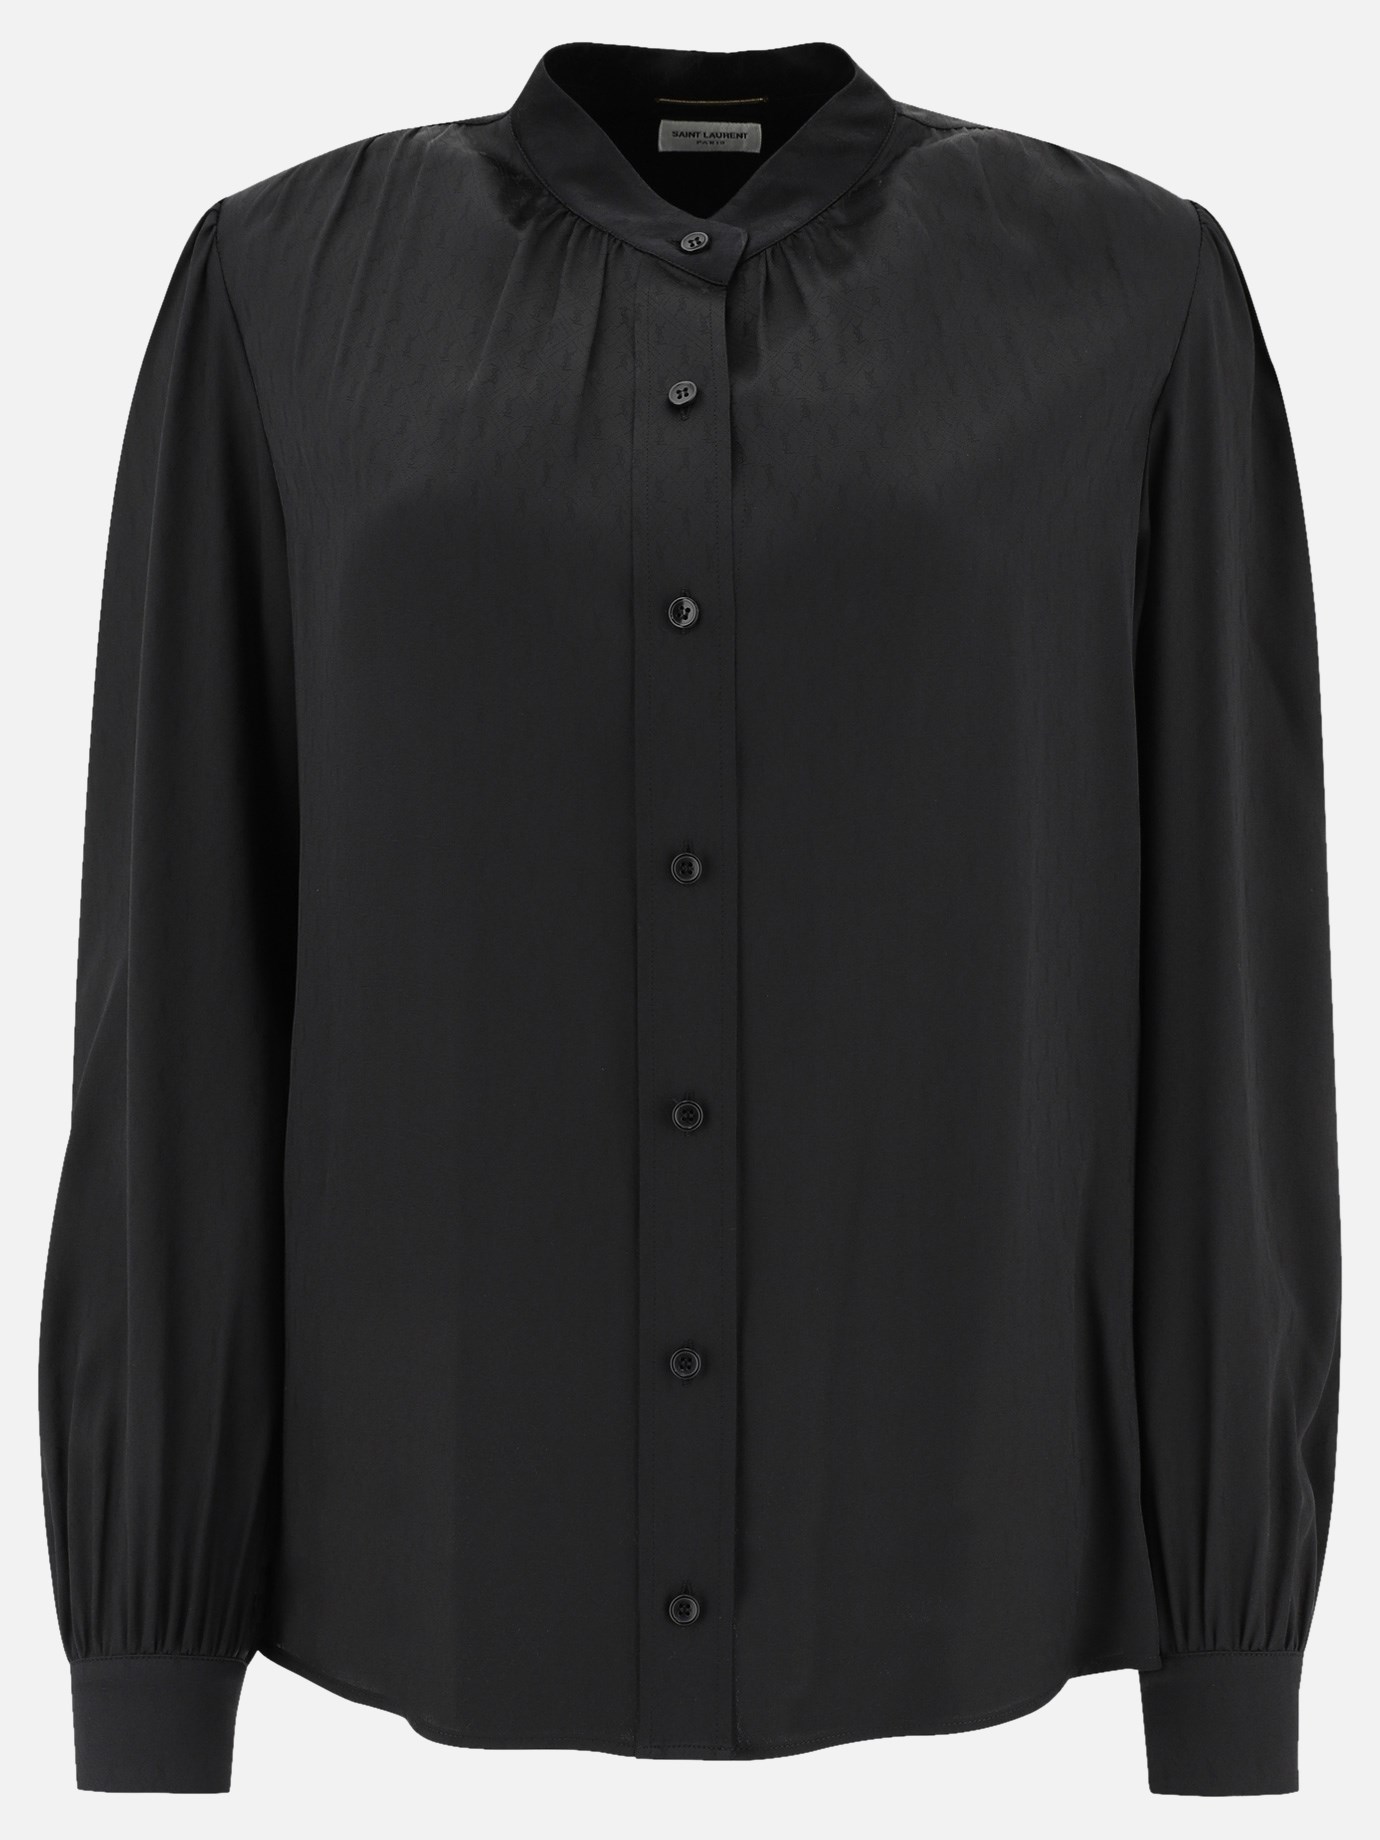  Monogram  blouse by Saint Laurent